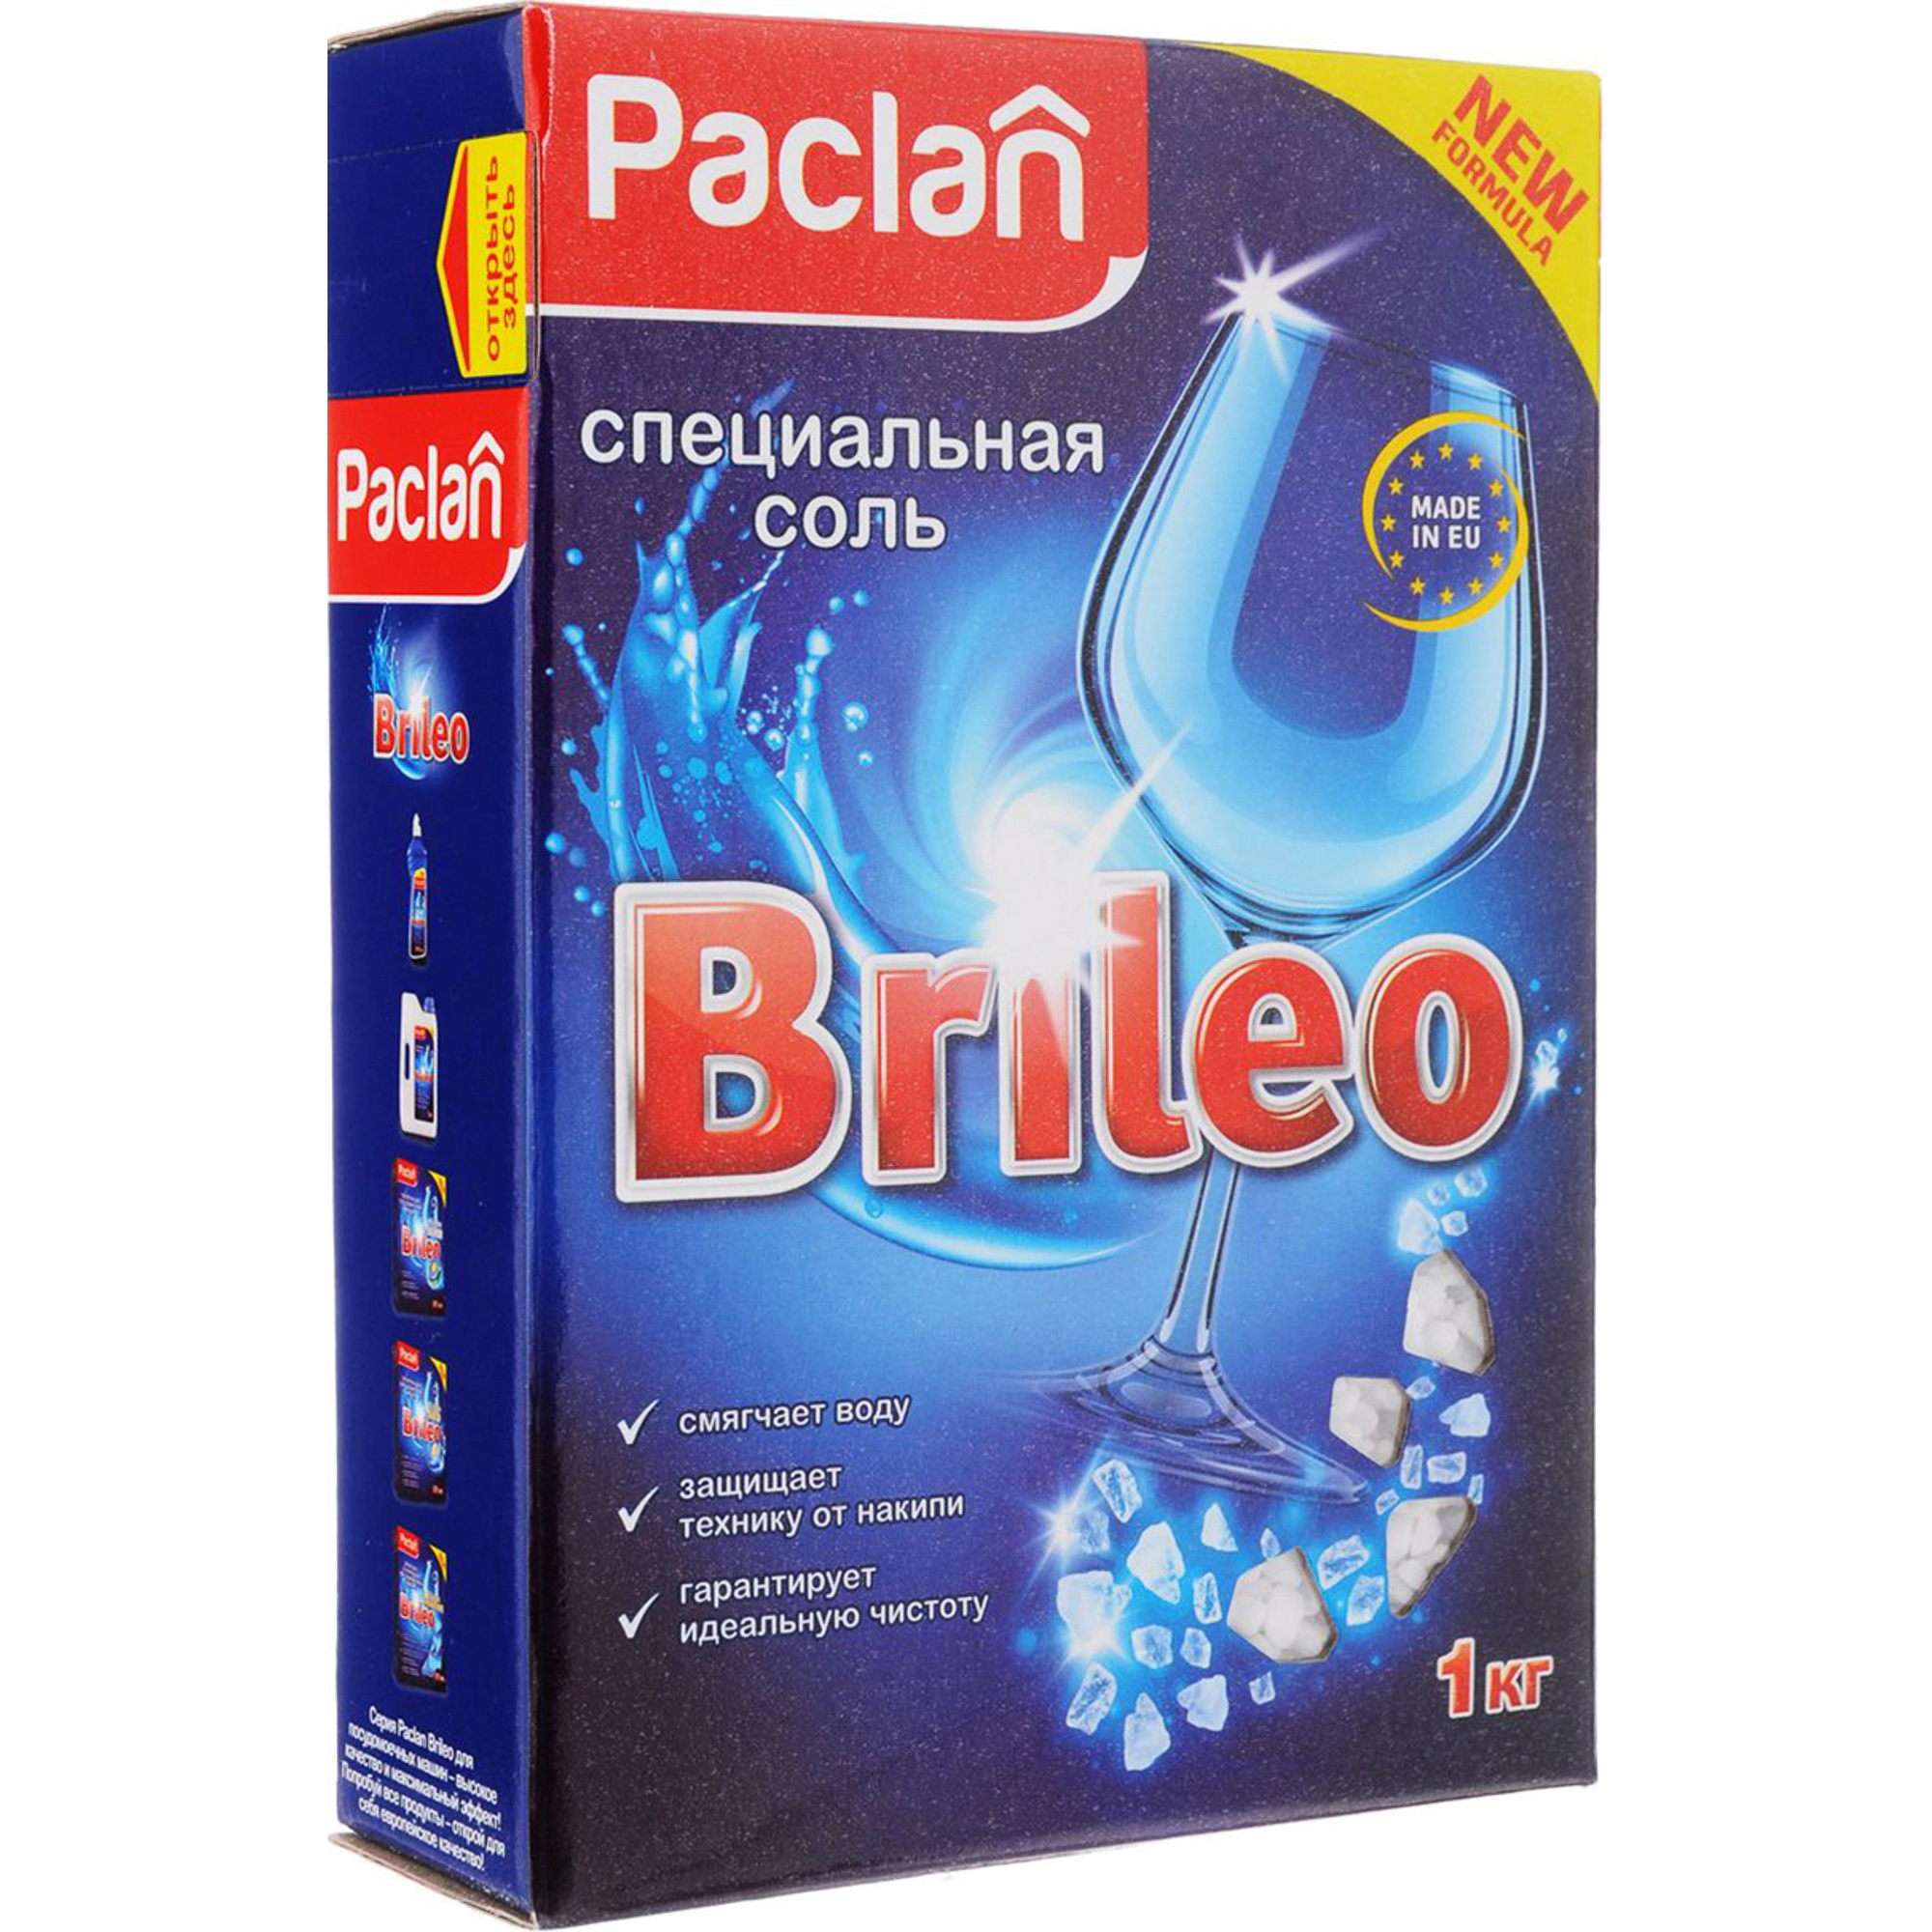 Специальная соль Paclan Brileo для посудомоечных машин 1 кг соль таблетки meule для посудомоечных машин 1 кг